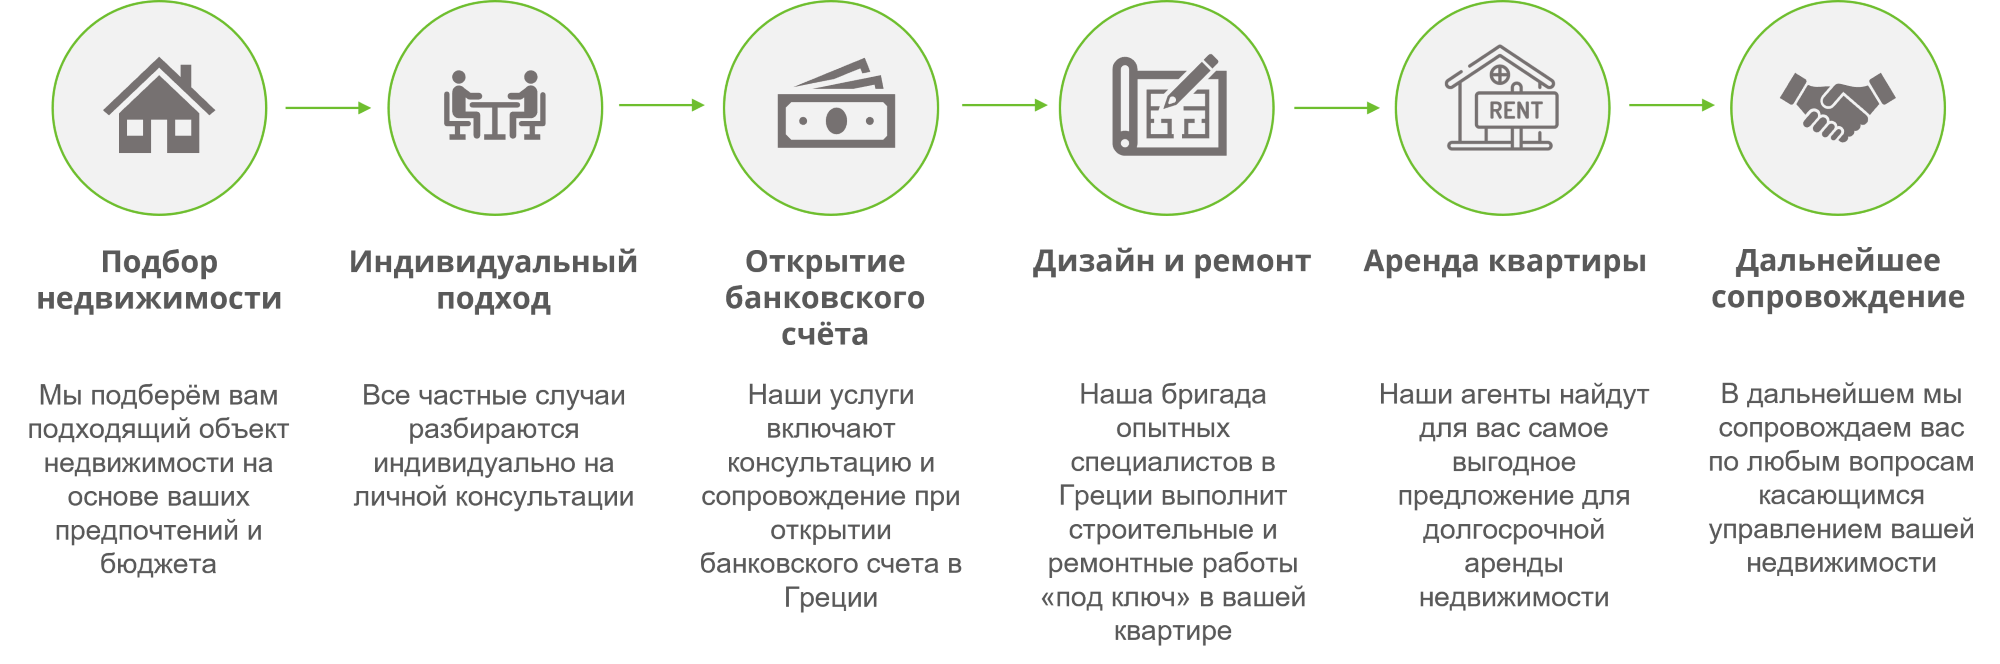 Схема услуг по покупке квартиры в Греции